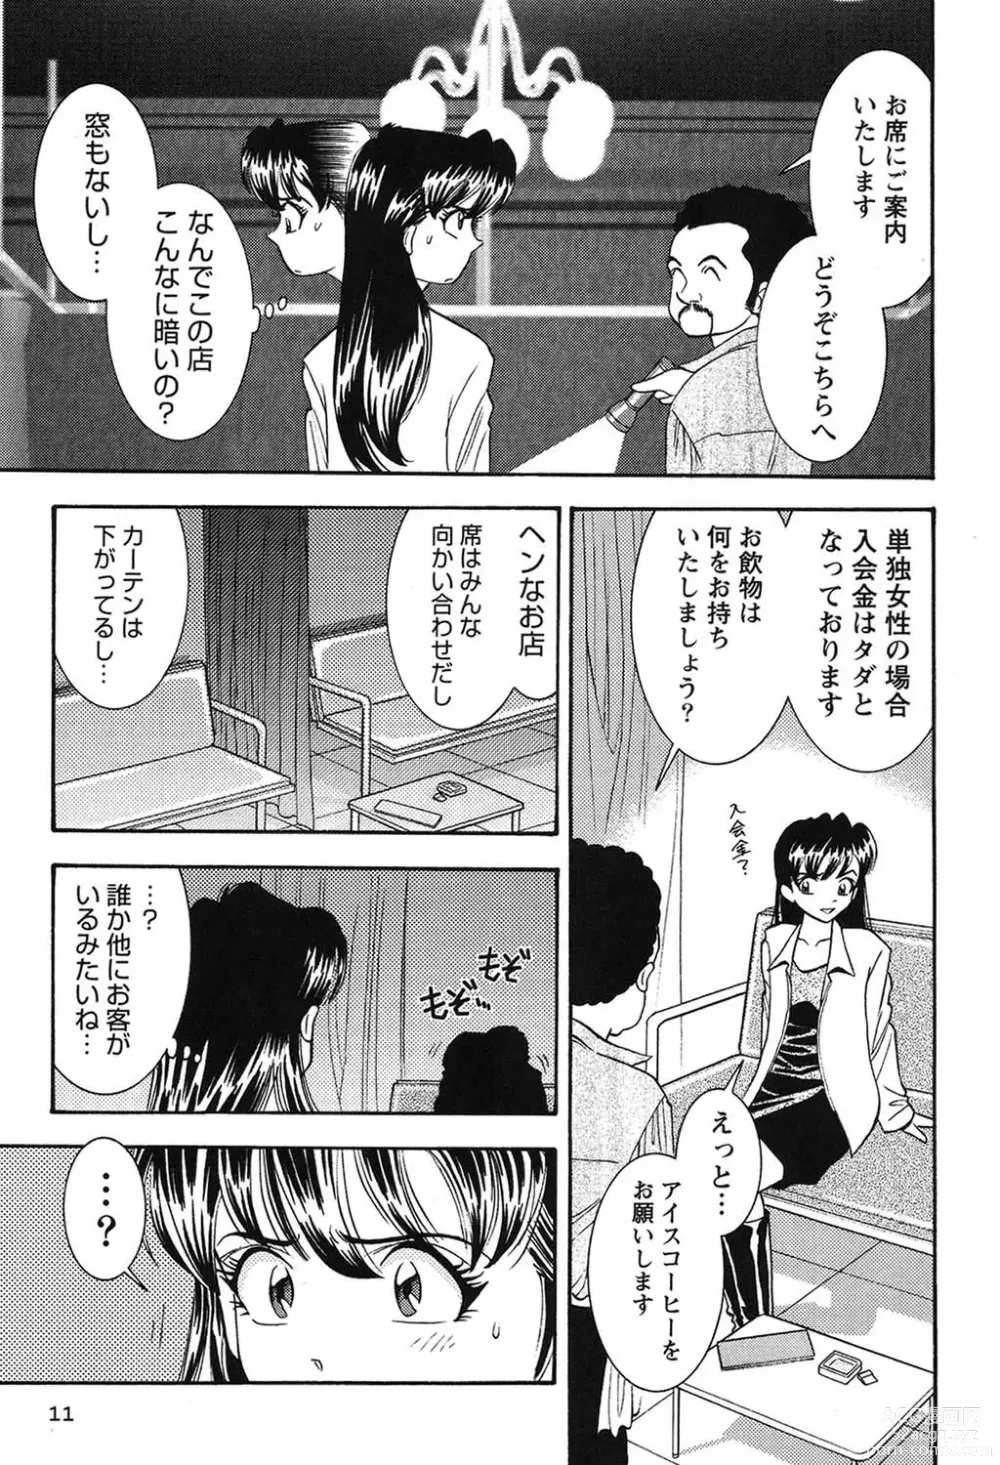 Page 12 of manga Bambina Oiroke  Battle  Hen